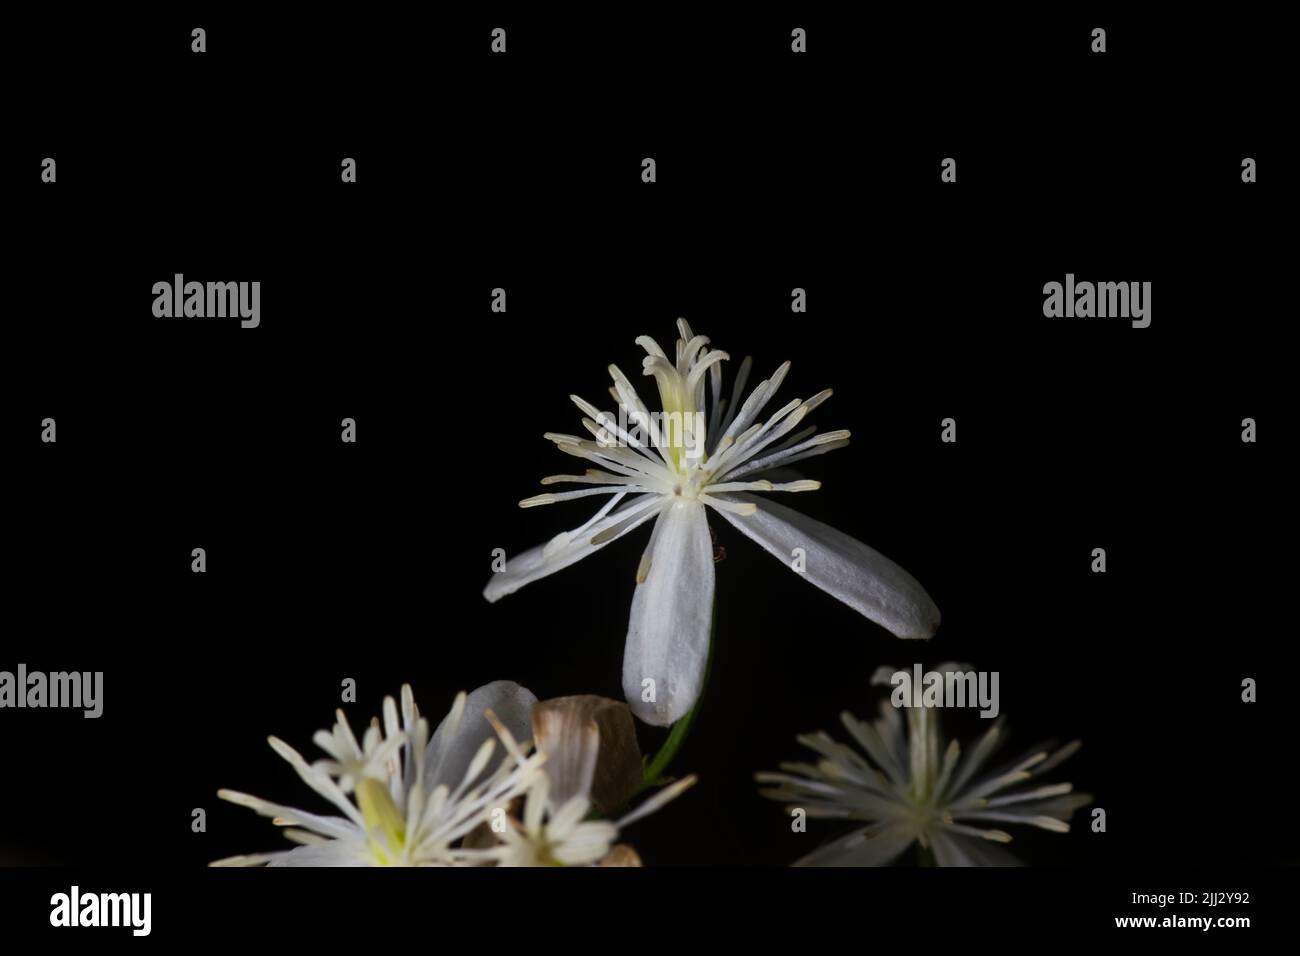 Dolce autunno Clematis fiore isolato su sfondo nero. È la vite perenne fiorente che produce fiori dolcemente fragranti Foto Stock